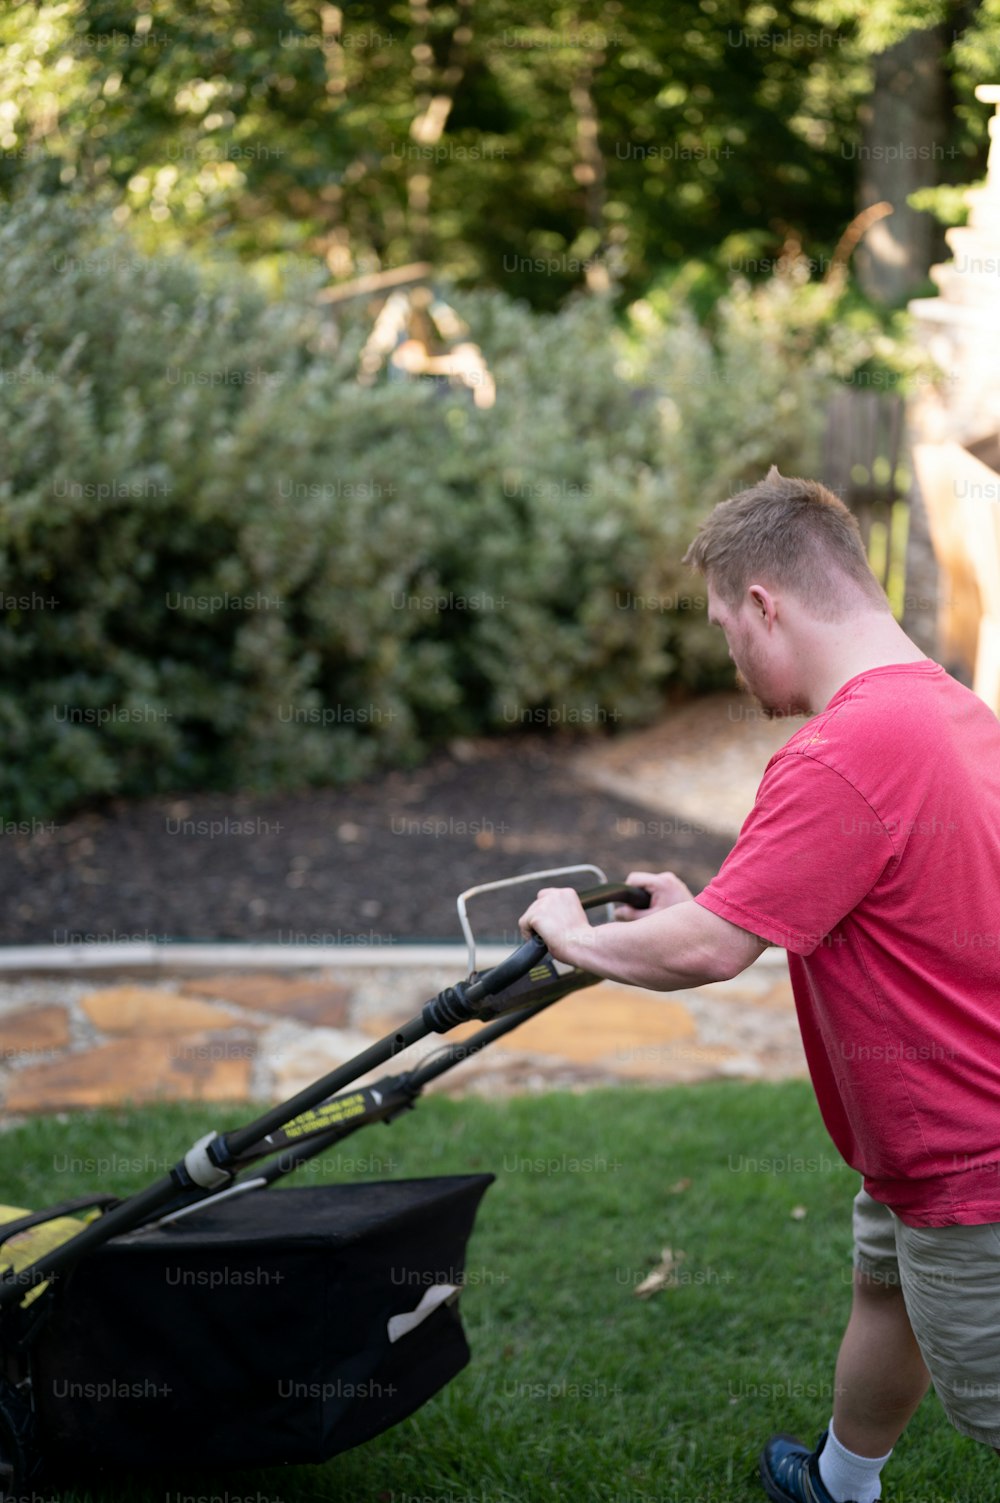 a man pushing a lawn mower in a yard